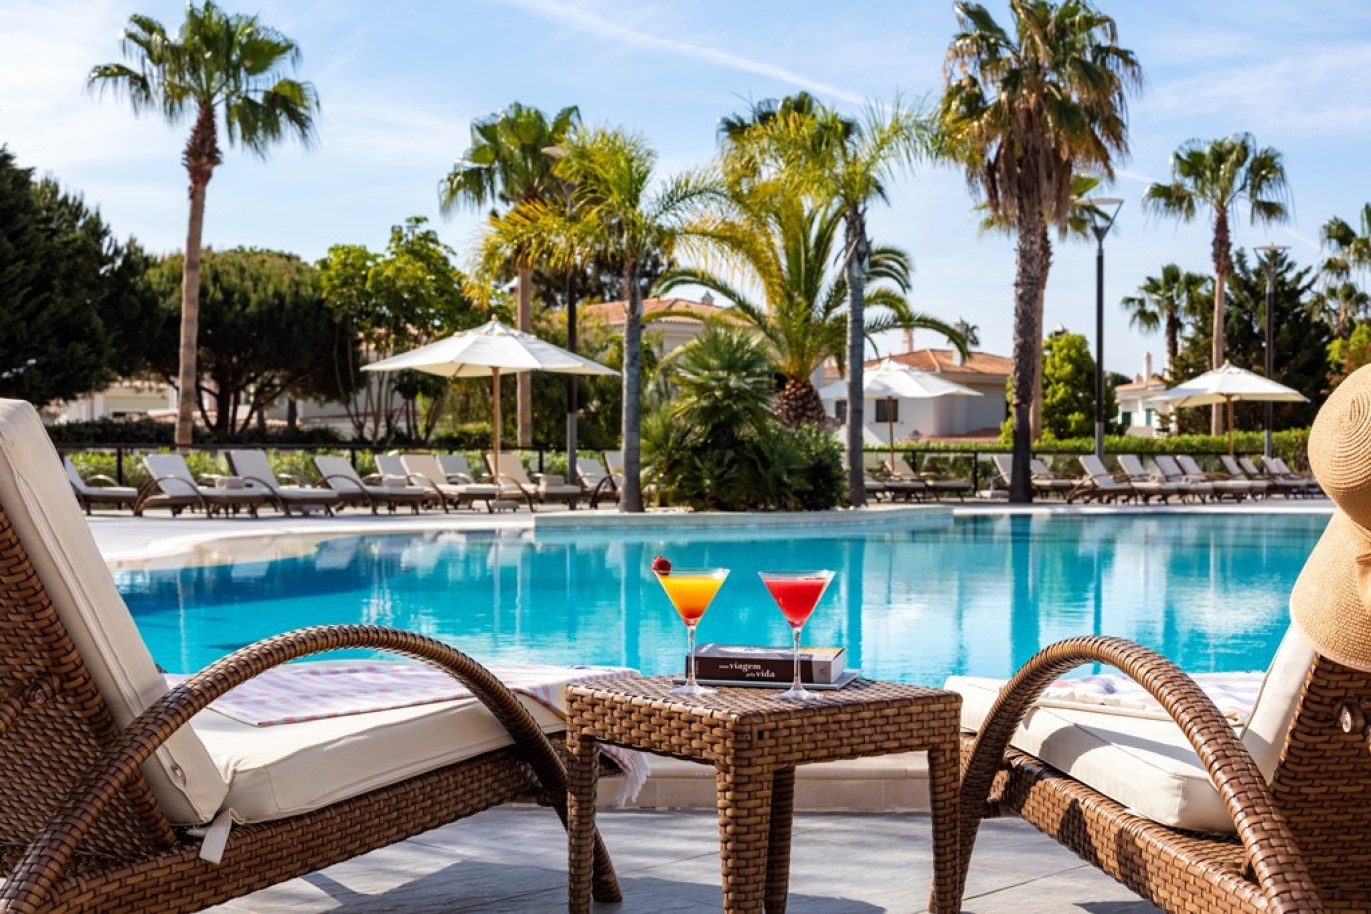 Apartamento, 2 quartos, piscina, para venda na Quinta do Lago, Algarve_263360